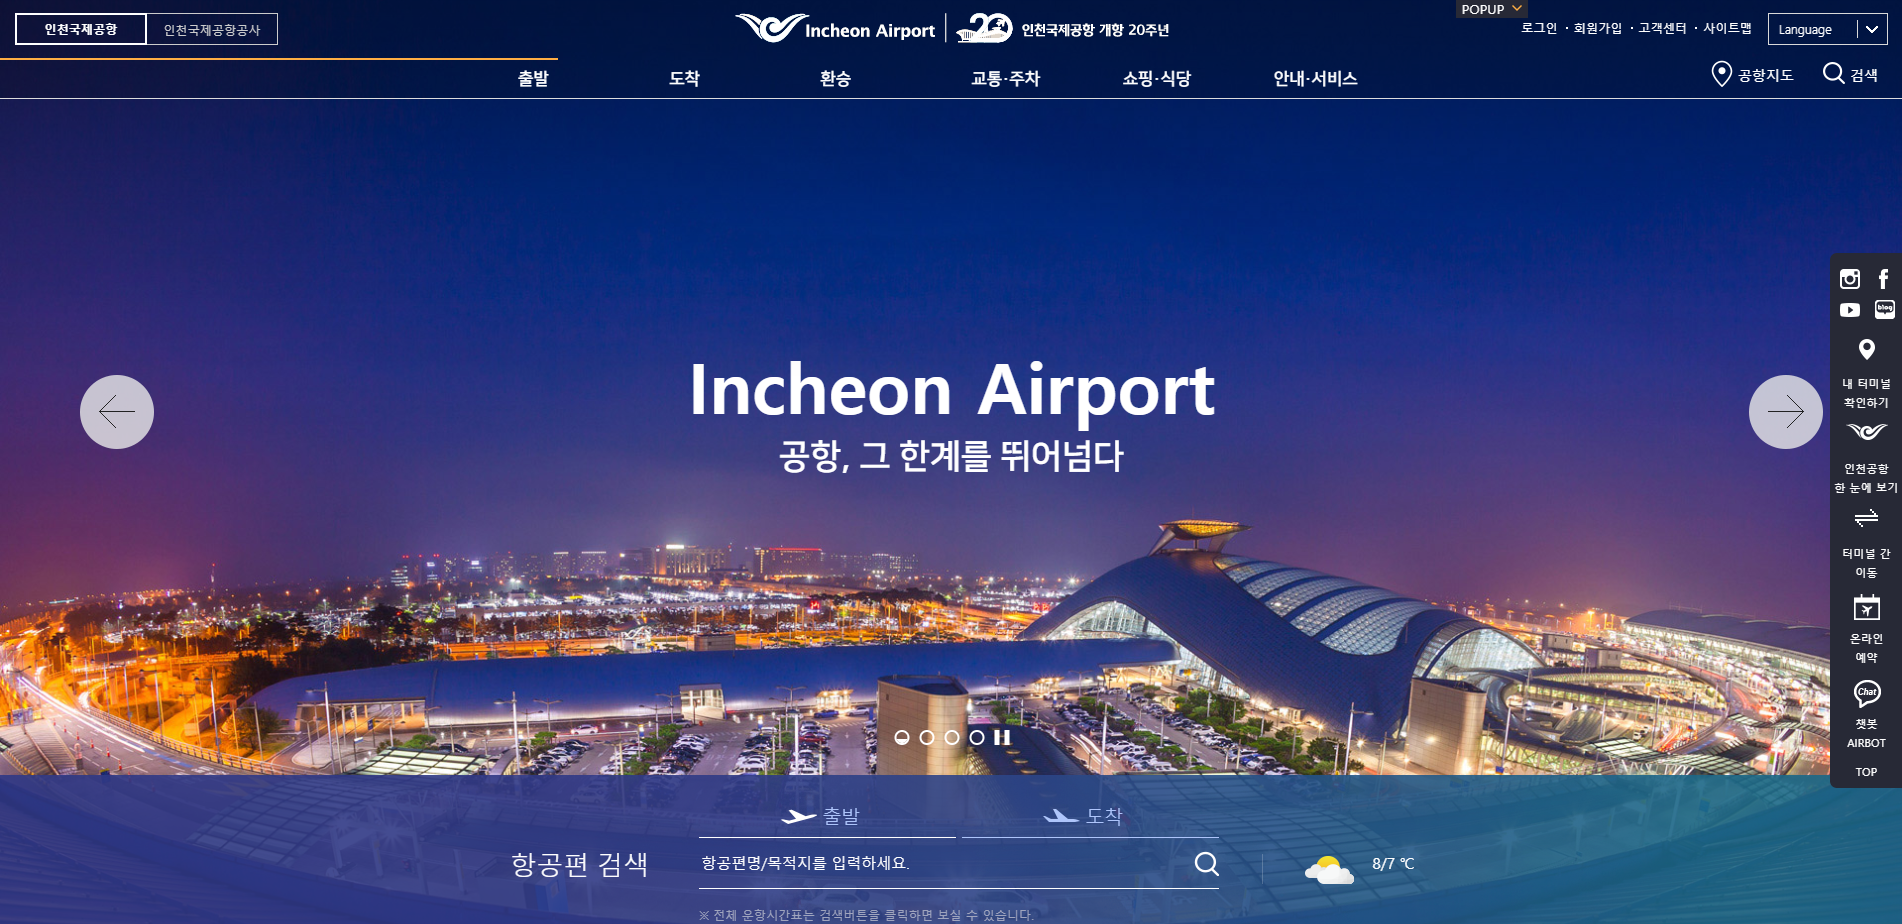 인천국제공항 홈페이지 스크릿샷